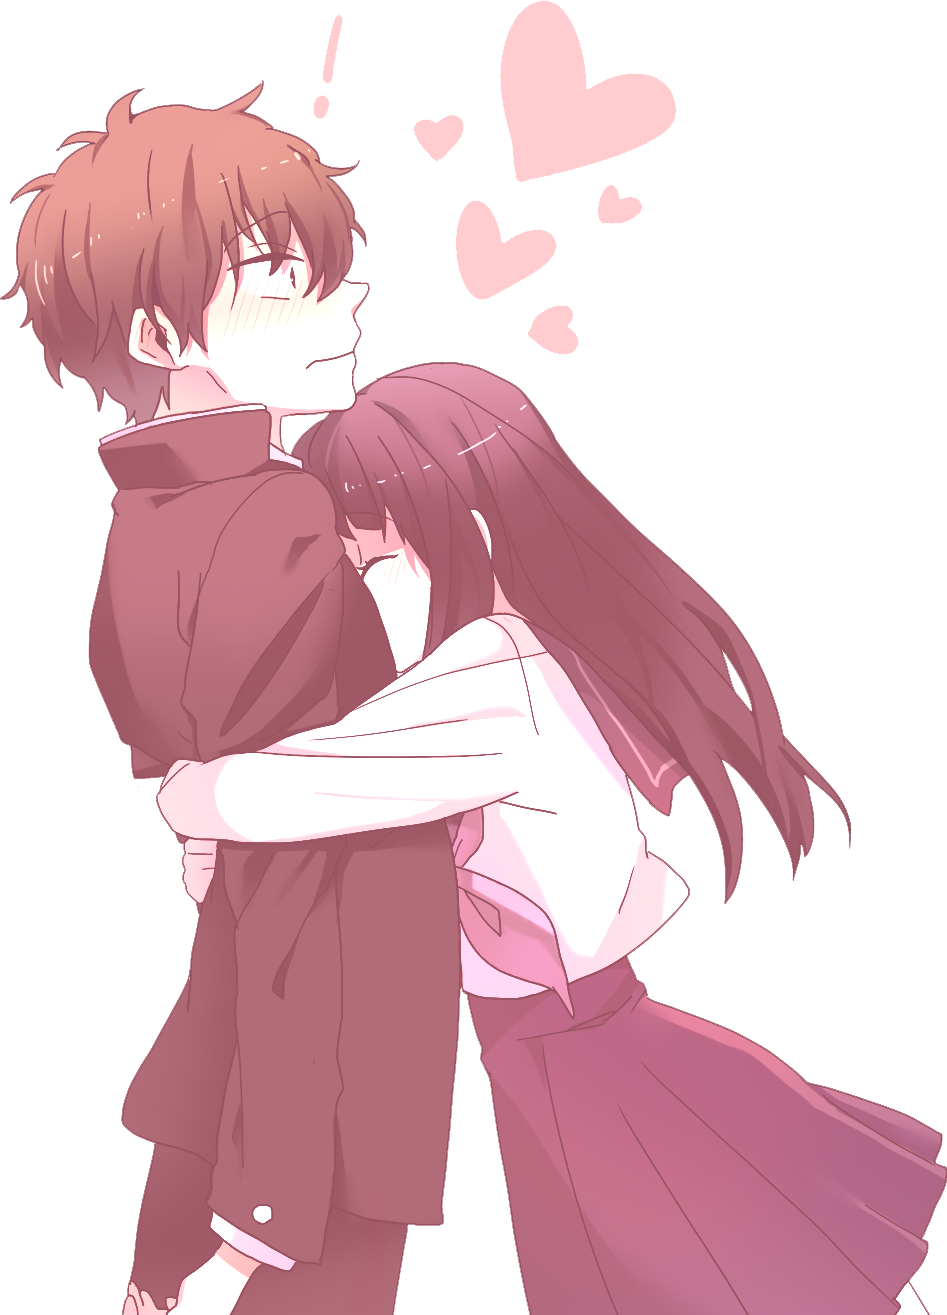 15 Anime Couple Hug Wallpapers  WallpaperSafari